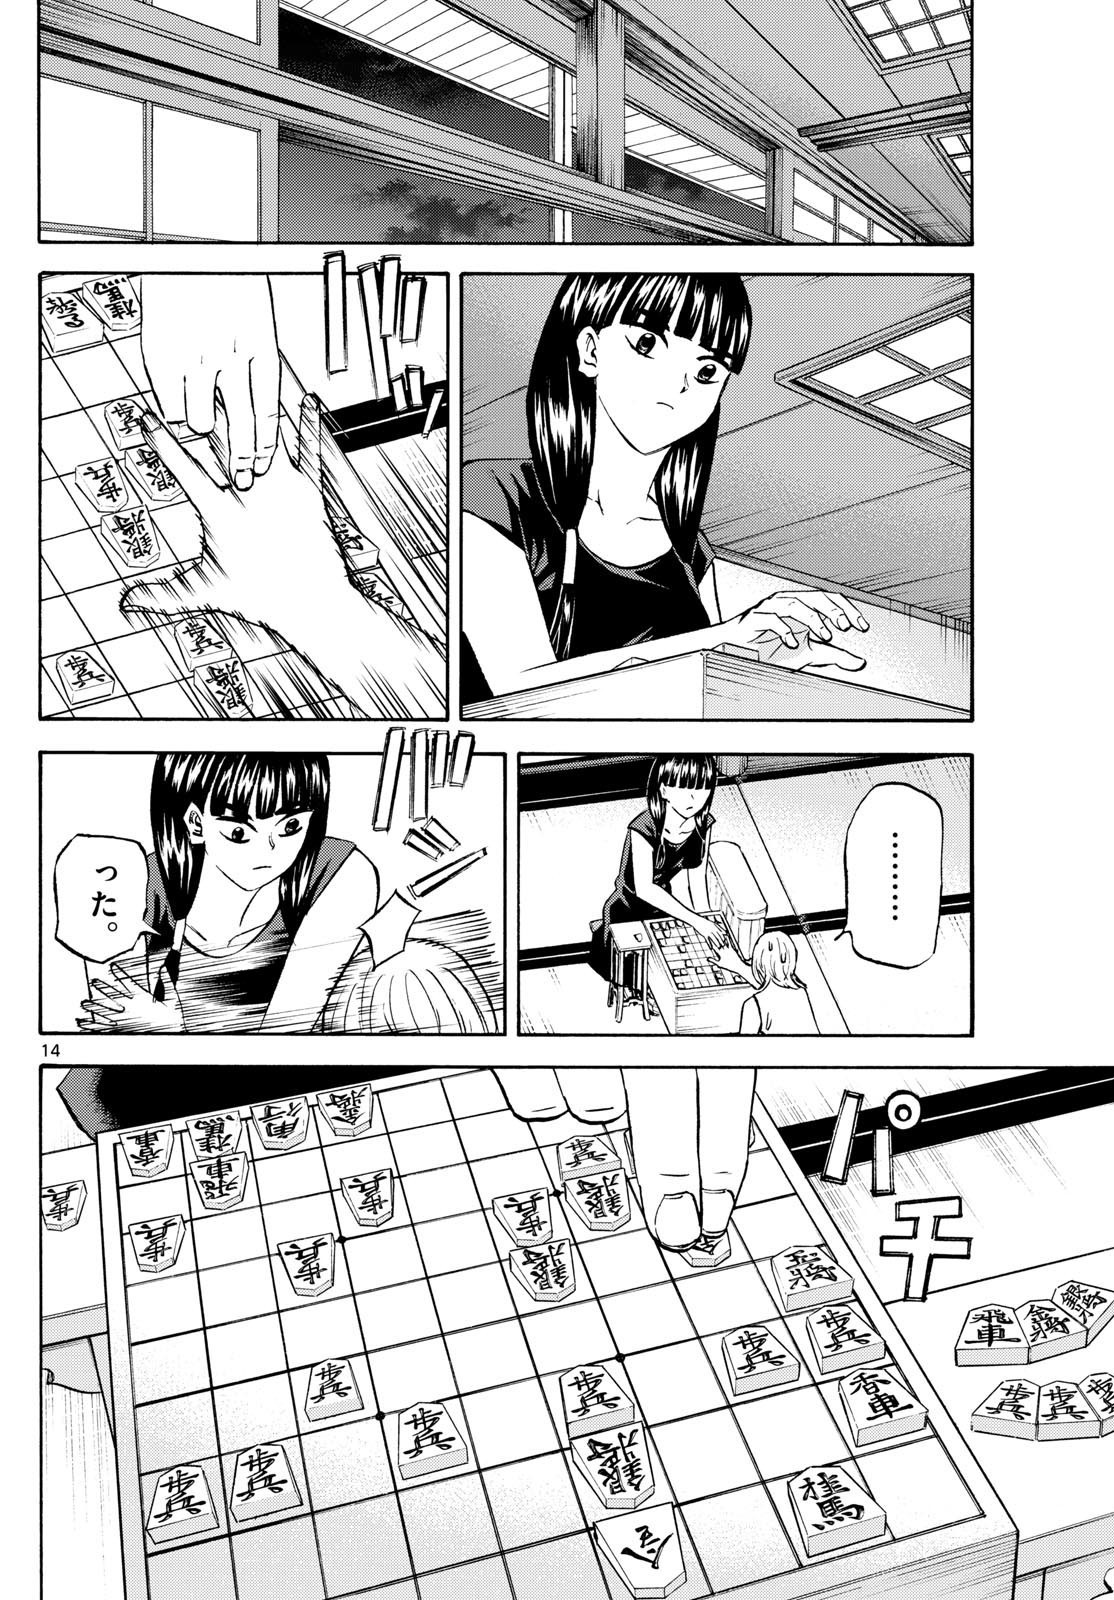 Ryu-to-Ichigo - Chapter 199 - Page 14